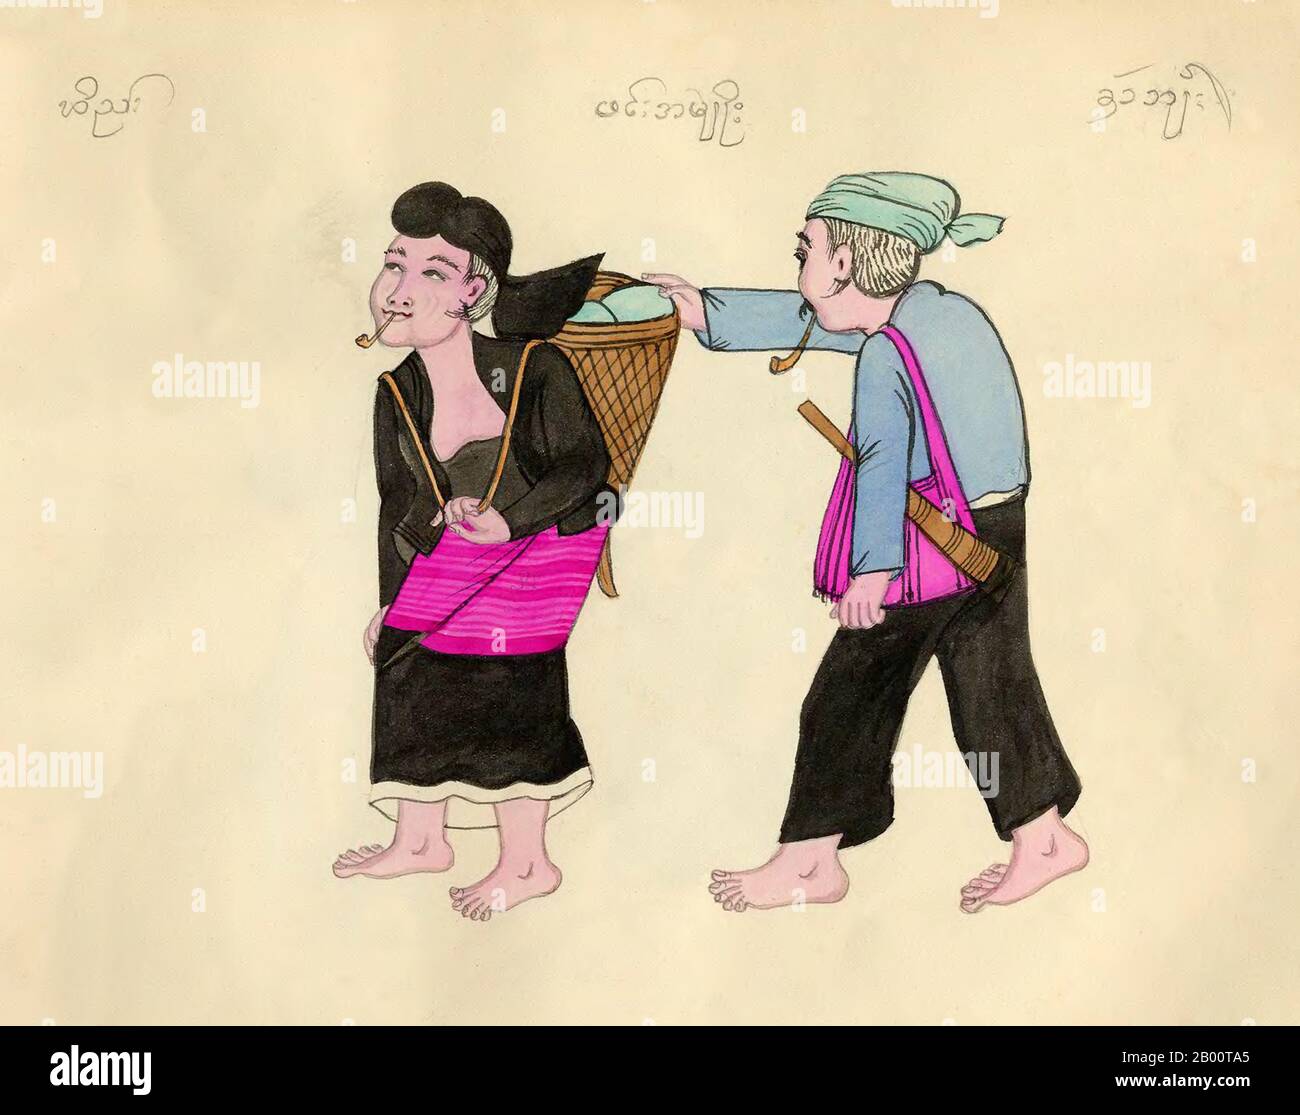 Birmanie/Myanmar: Couple de Hpin en robe ethnique. Le texte Shan les identifie comme 'Hpin', tandis que les Birmans les appellent Hpin Amyo ou 'Hpin Tribe'. La femme porte un panier de fruits et l'homme un dah ou un long couteau. Aquarelle de la fin du XIXe siècle dessinée à la main par un artiste birman inconnu. Le nom du groupe ethnique en vedette apparaît en haut de l'image dans les textes Shan (à gauche), birman (au centre) et Khun (à droite). Le script Khun était autrefois utilisé à Kengtung/Kyaingtong dans l'est de l'État de Shan et dans LAN Na ou Lanna, dans le nord de la Thaïlande. Banque D'Images